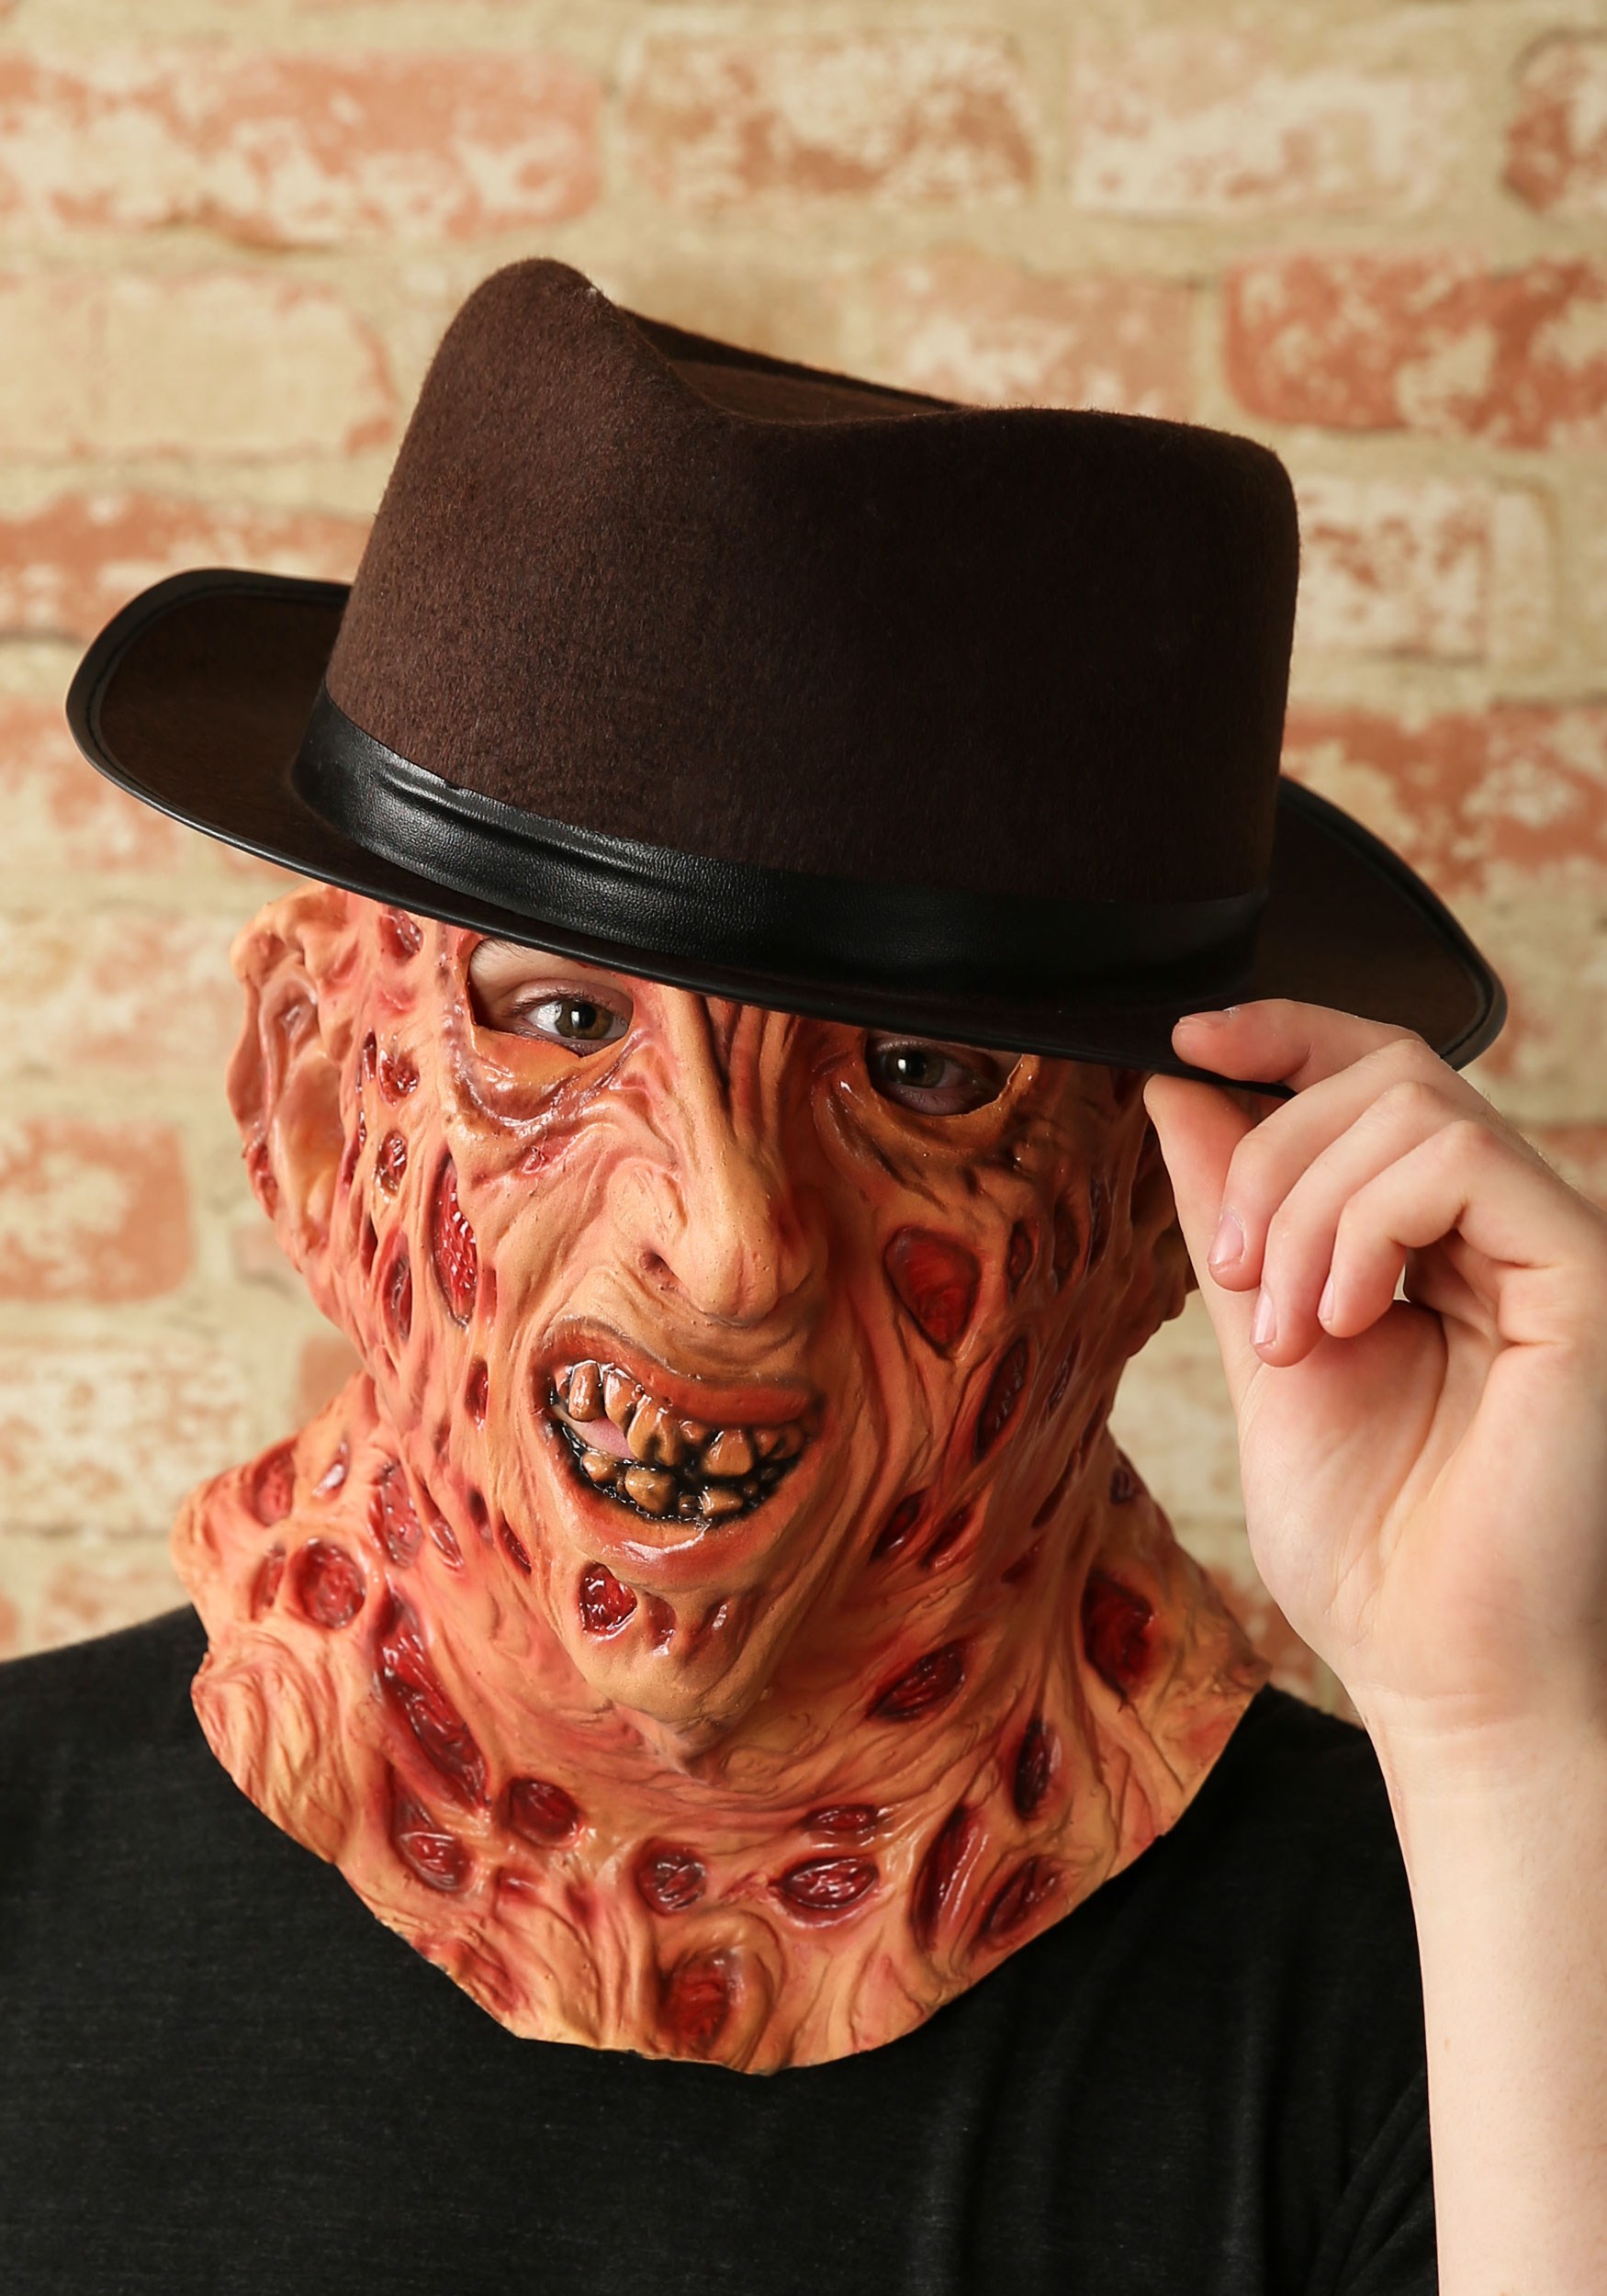 Freddy Krueger Full Head Mask